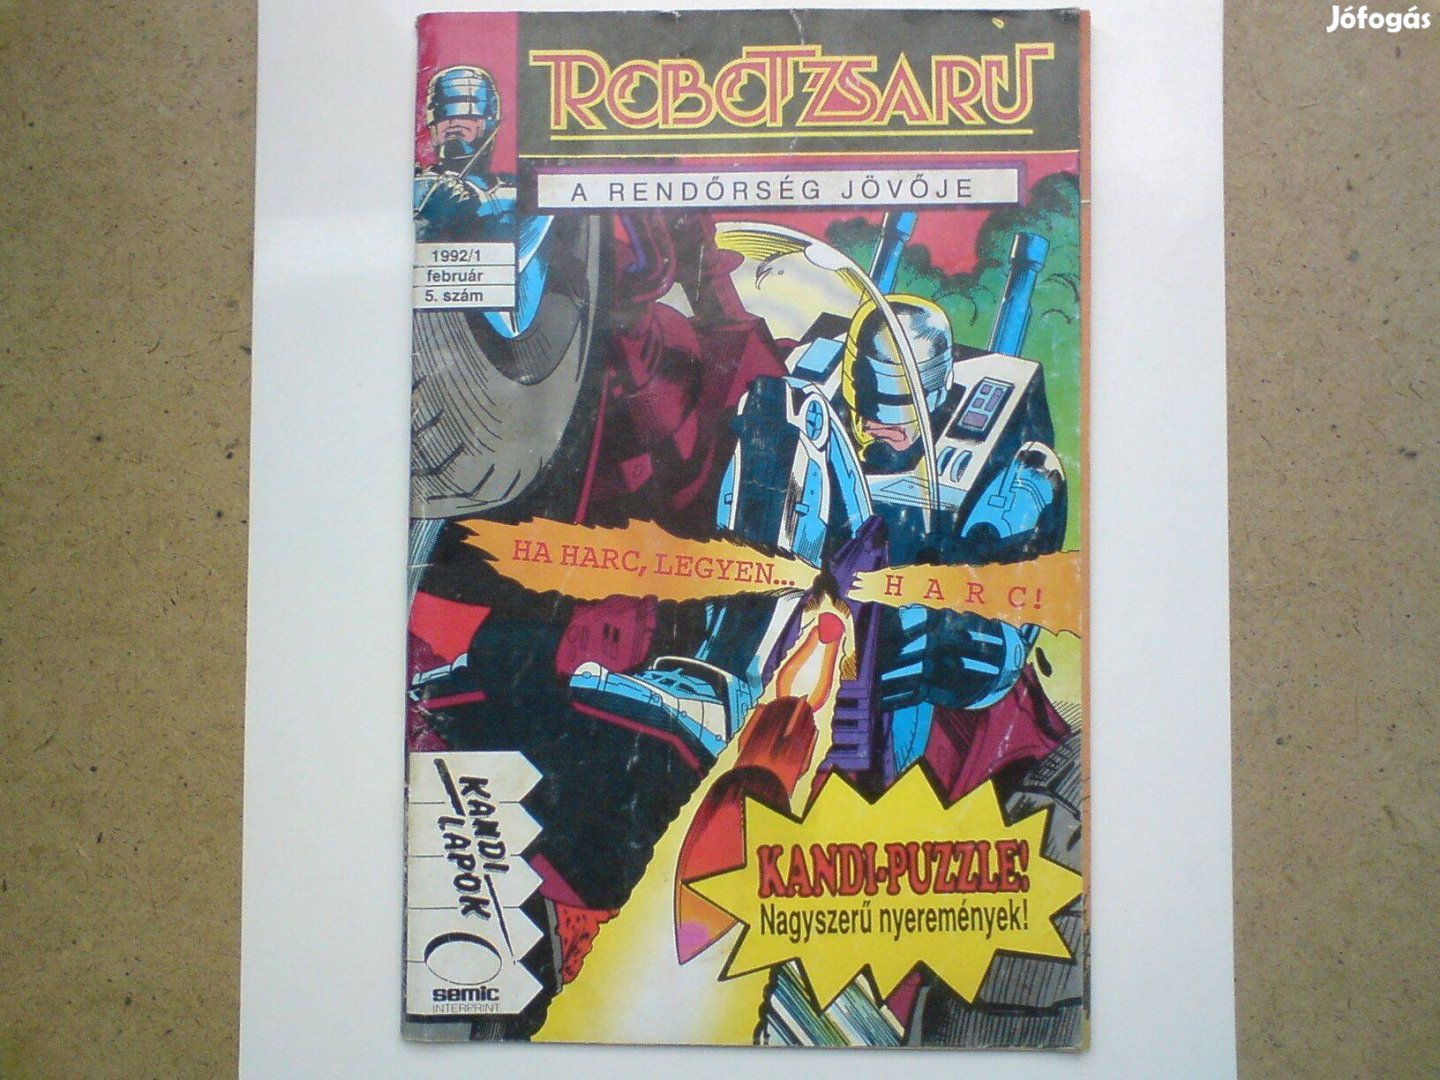 Régi képregény - Robotzsaru 1992/1. február